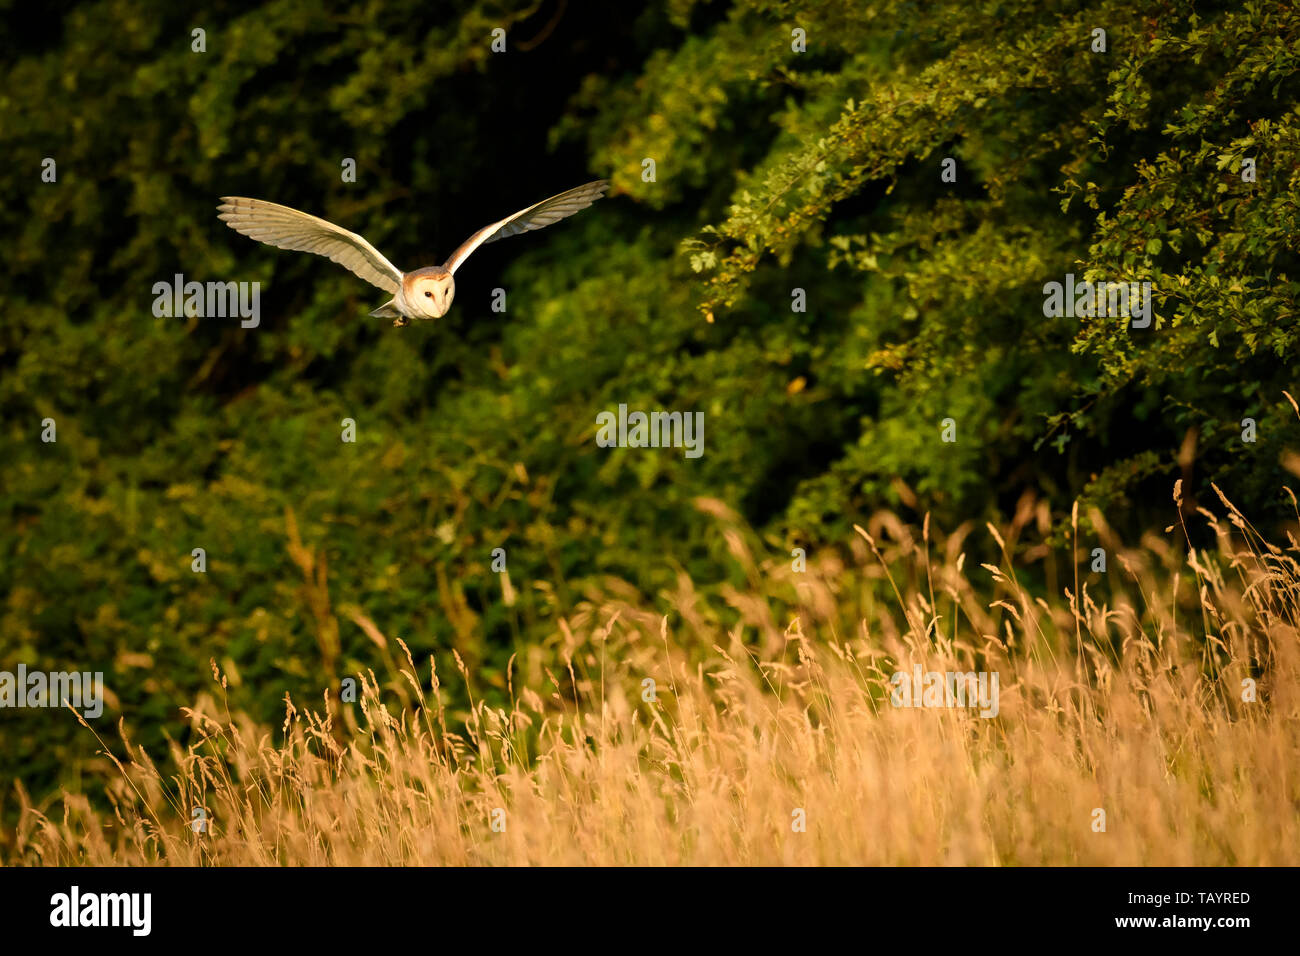 Effraie des clochers (Tyto alba) éclairées par la lumière du soleil du soir dans l'habitat de chasse, volant à basse altitude au-dessus des prairies, ailes déployées - Baildon, West Yorkshire, Angleterre, Royaume-Uni. Banque D'Images